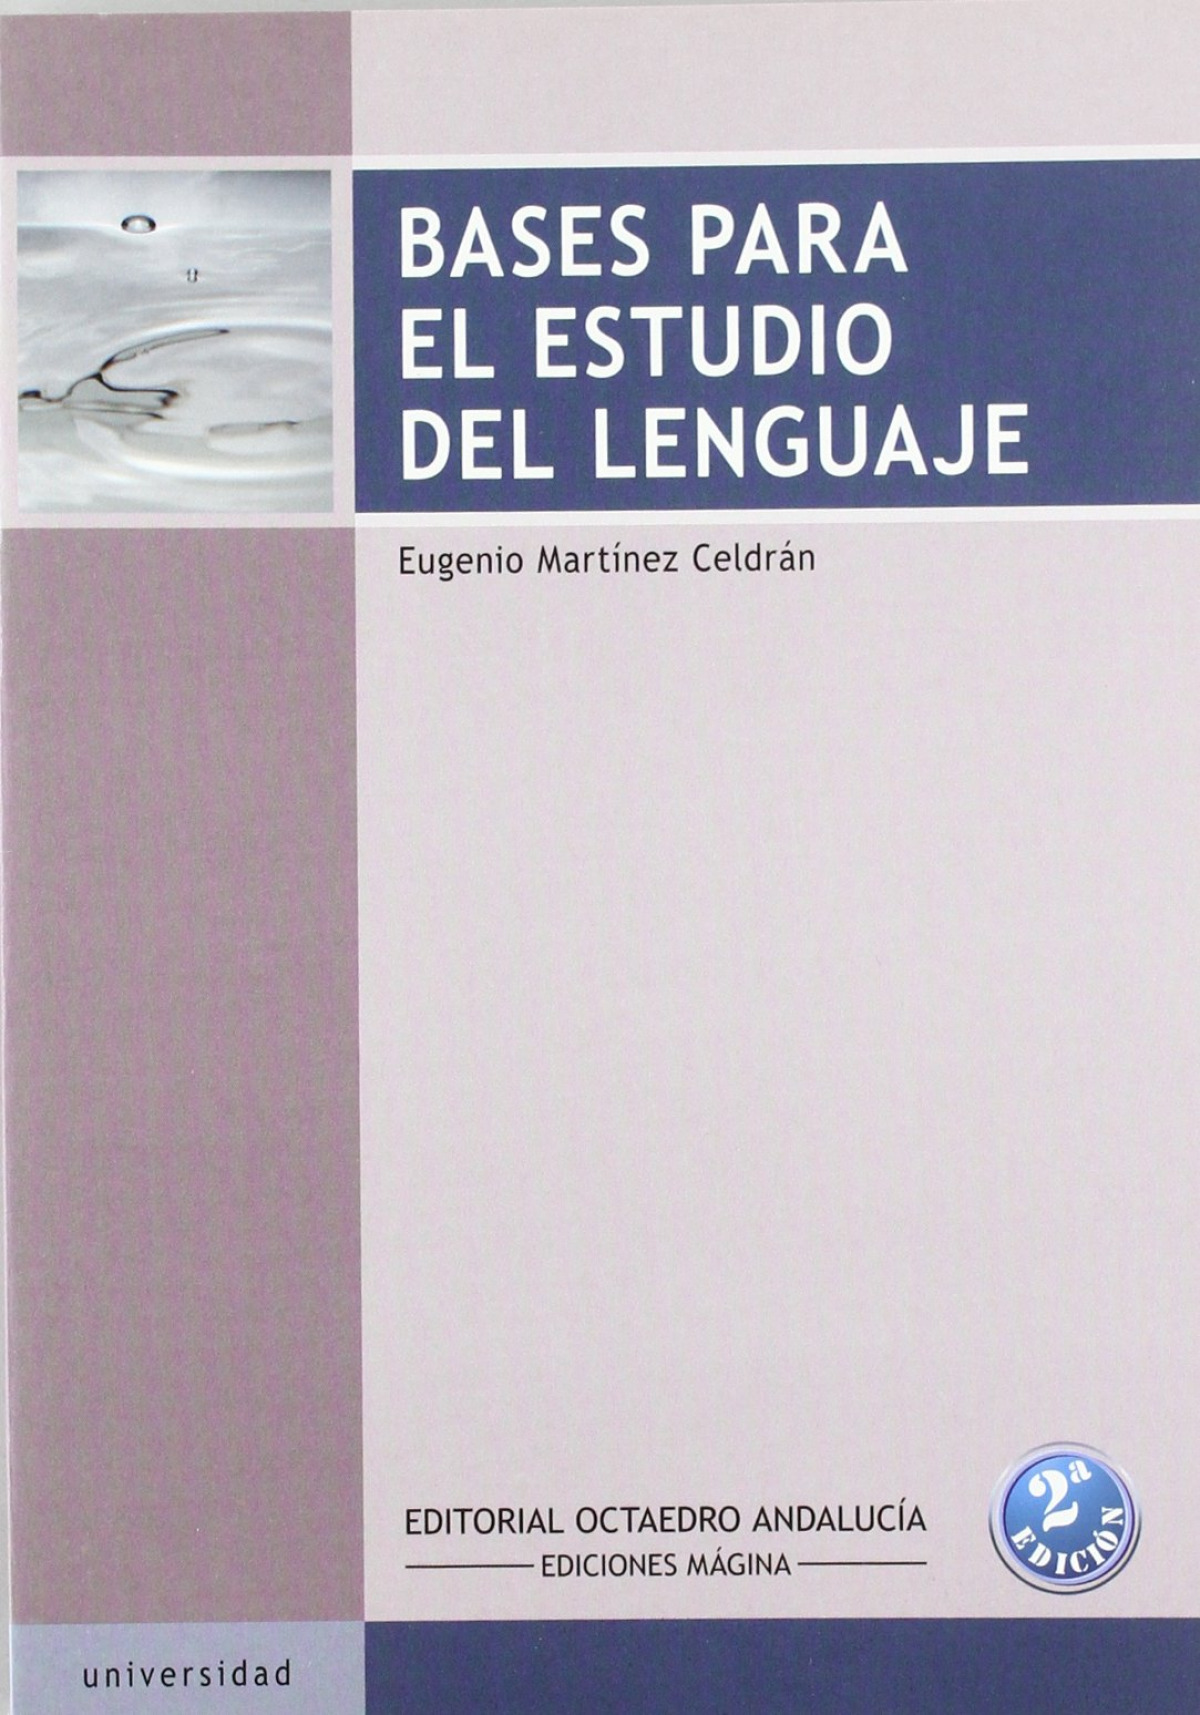 Bases para el estudio del lenguaje - Martínez Celdran, Eugenio